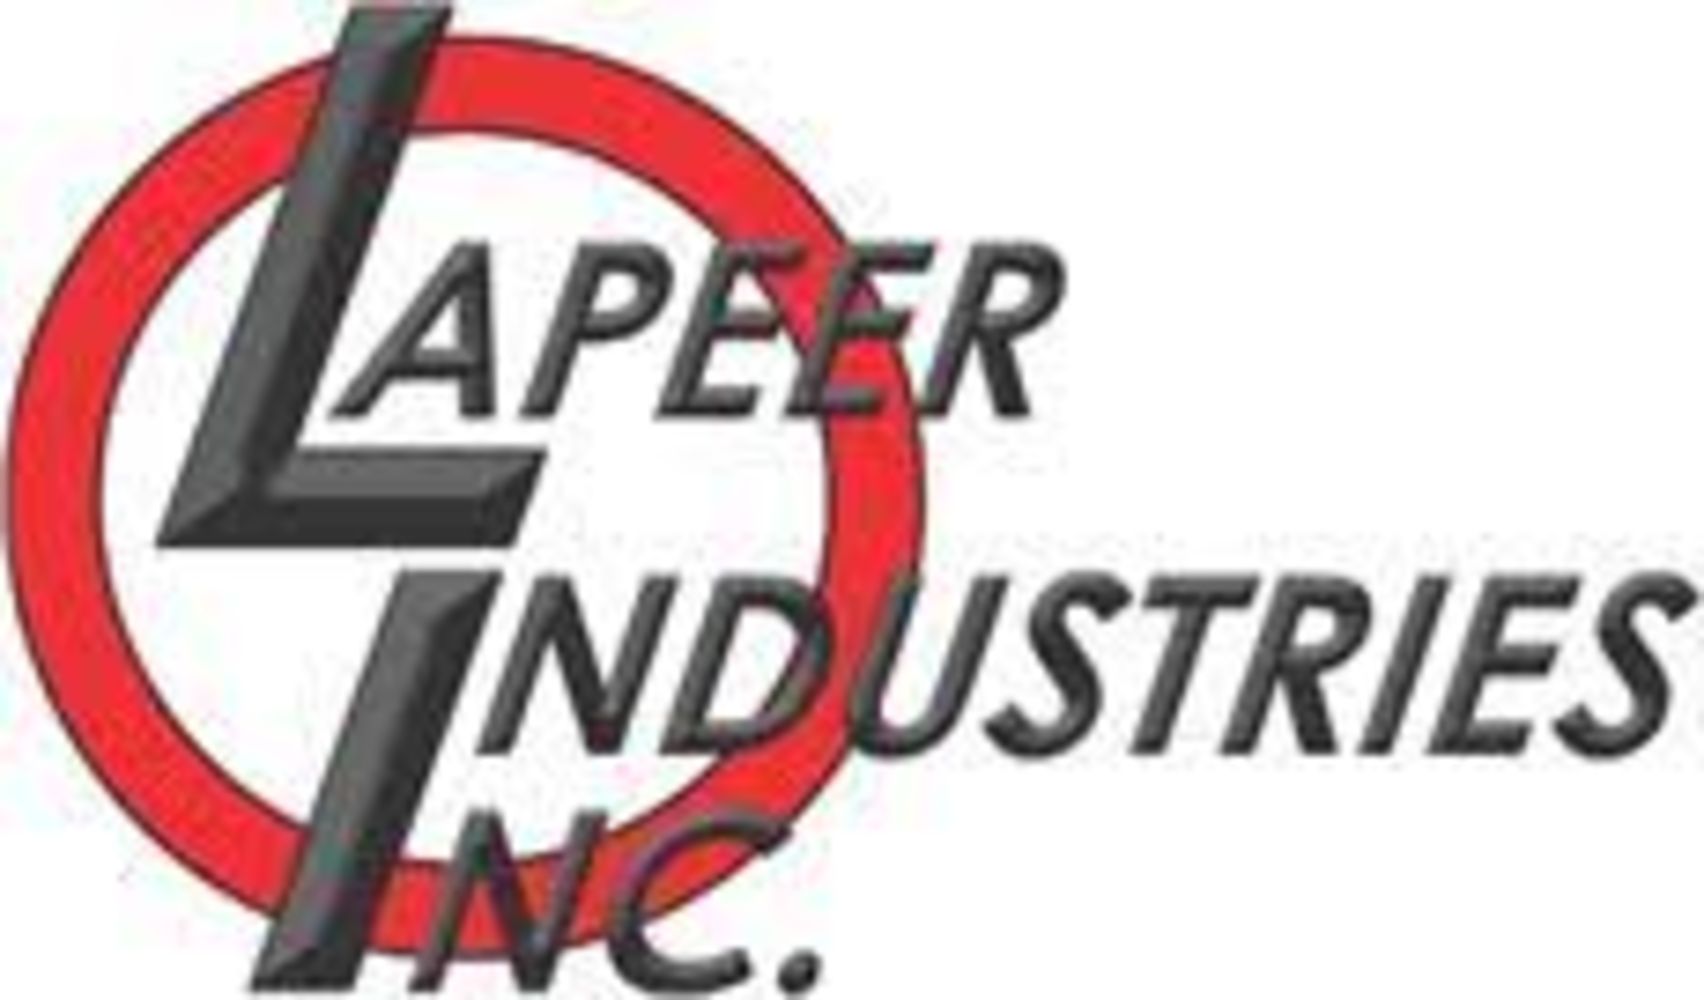 Lapeer Industries Inc